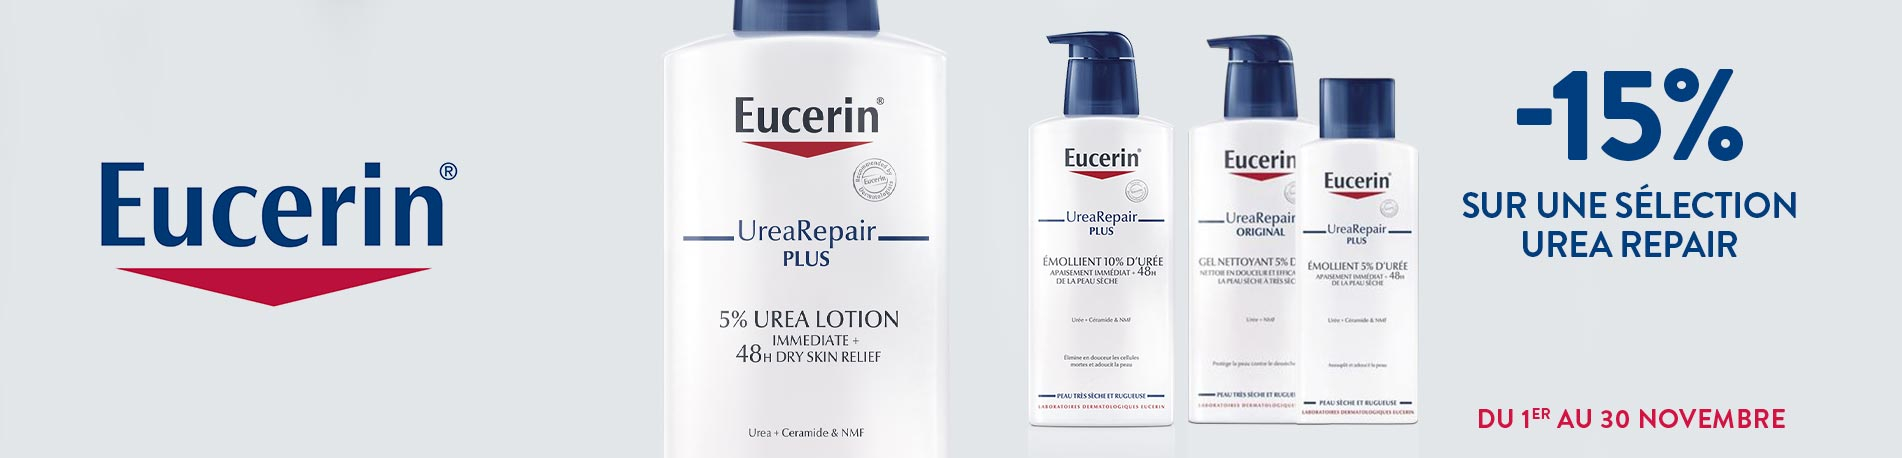 Promotion  Eucerin Urea repair